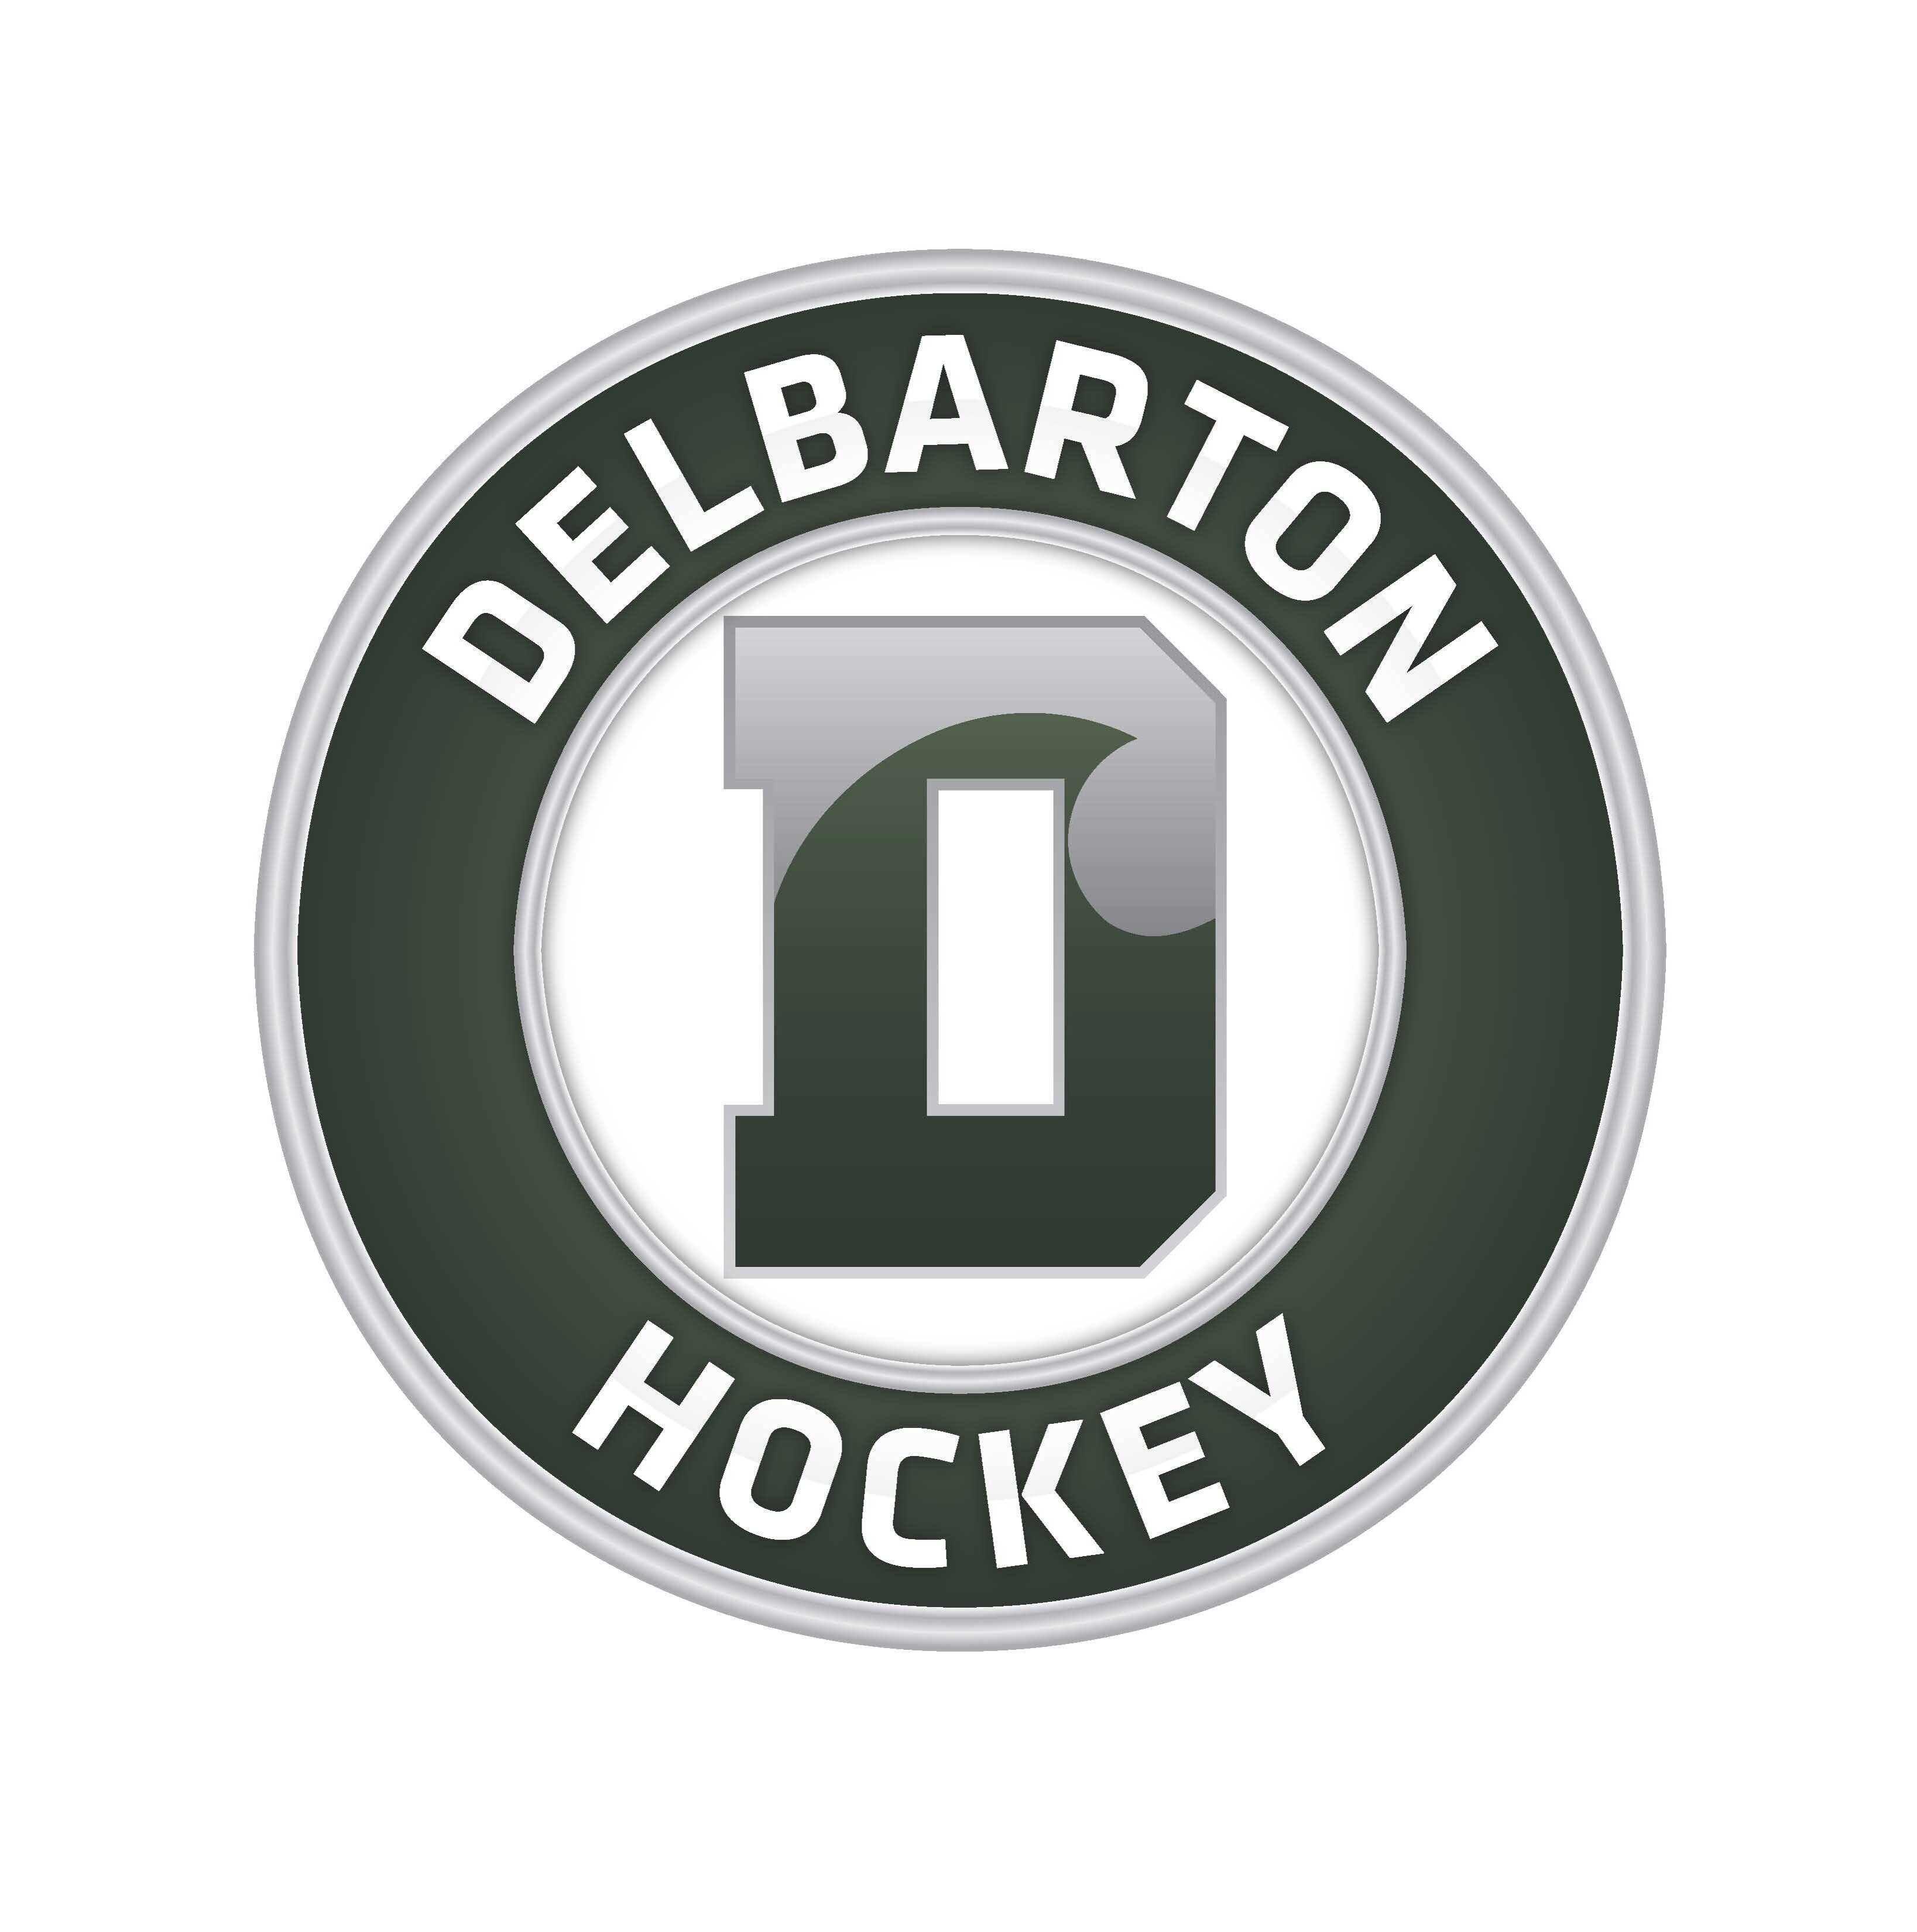 Delbarton Hockey